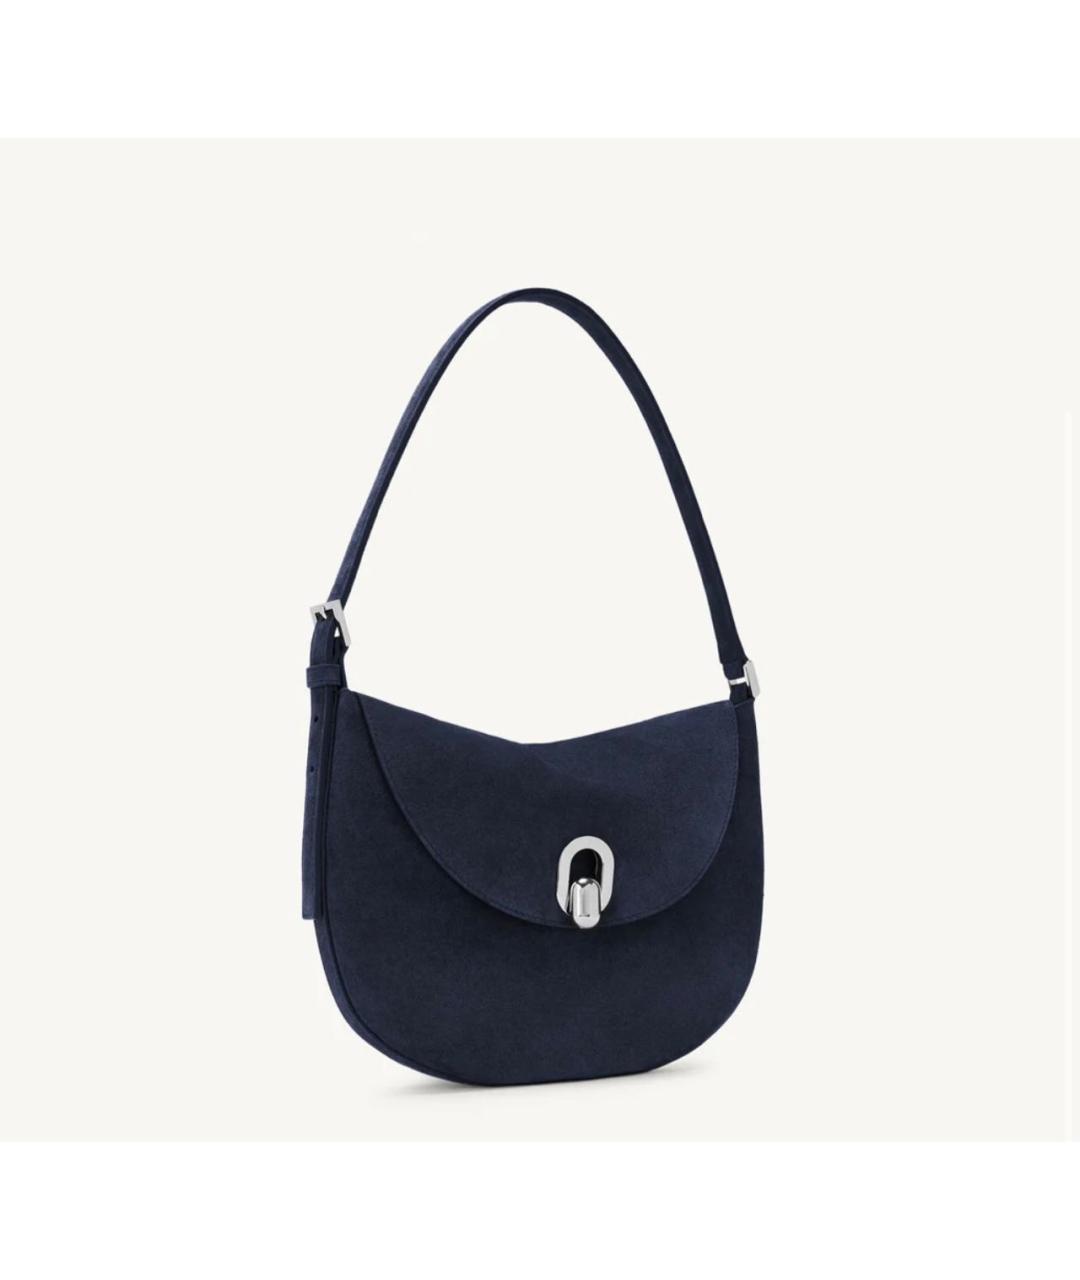 Savette Темно-синяя замшевая сумка с короткими ручками, фото 3